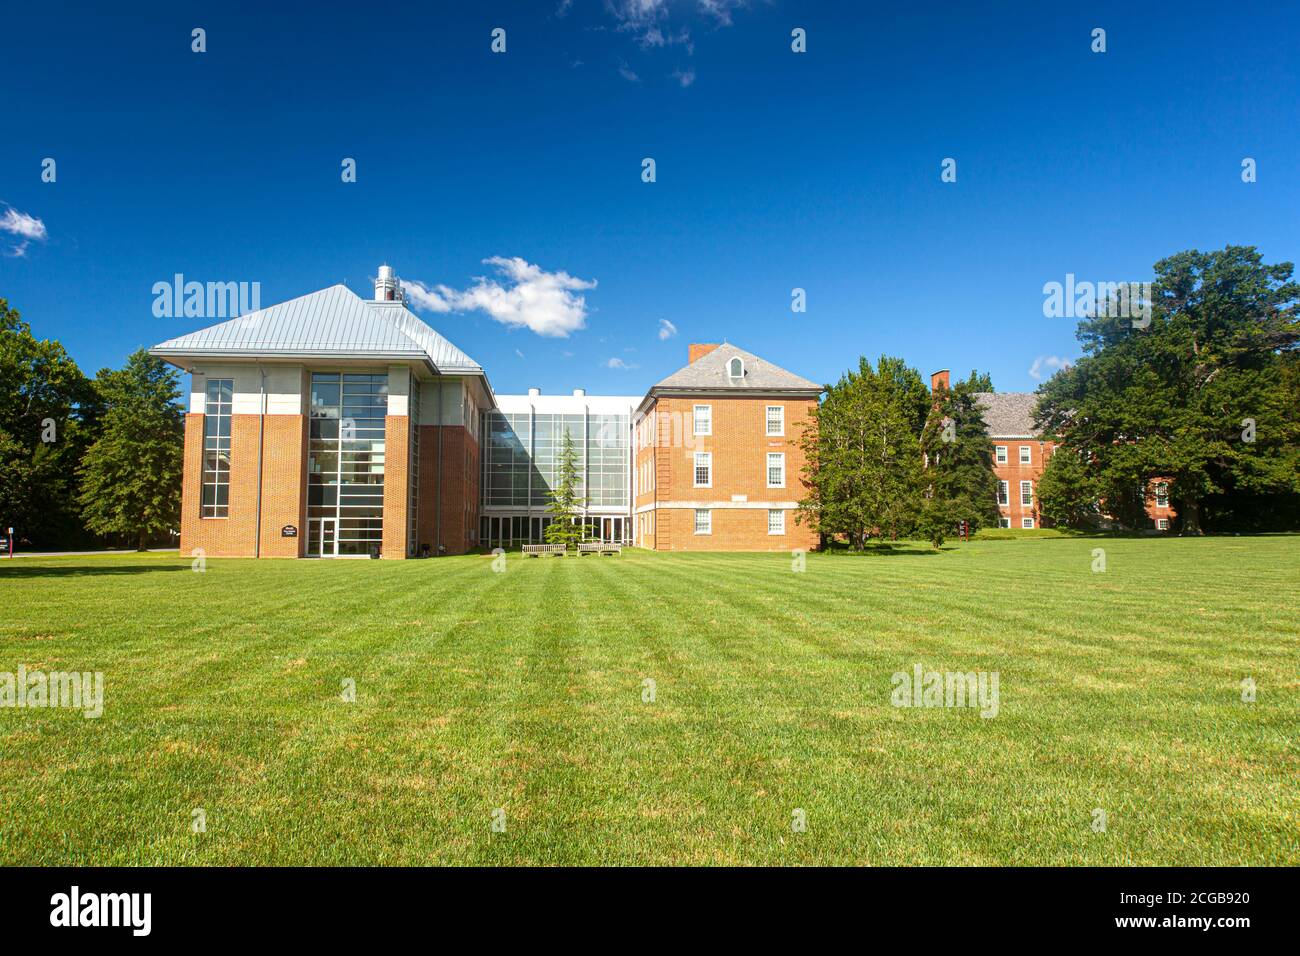 Chestertown, MD, USA 08/30/2020: Il campus principale del Washington College, un college privato di materie umanistiche fondato nel 1782 a Chestertown, MD. George Wash Foto Stock